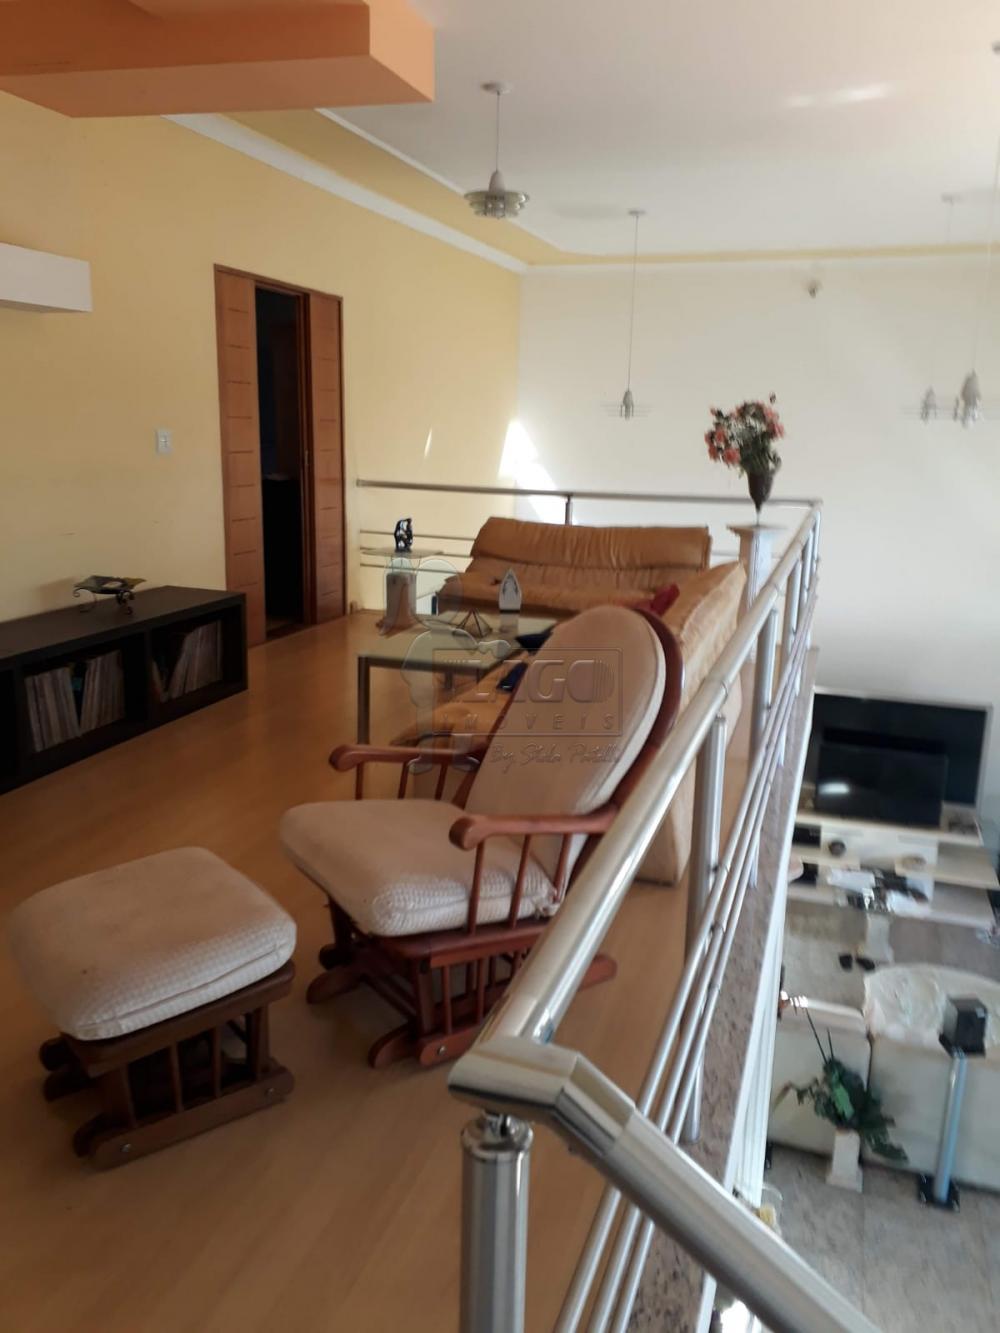 Comprar Casa condomínio / Padrão em Ribeirão Preto R$ 2.000.000,00 - Foto 9